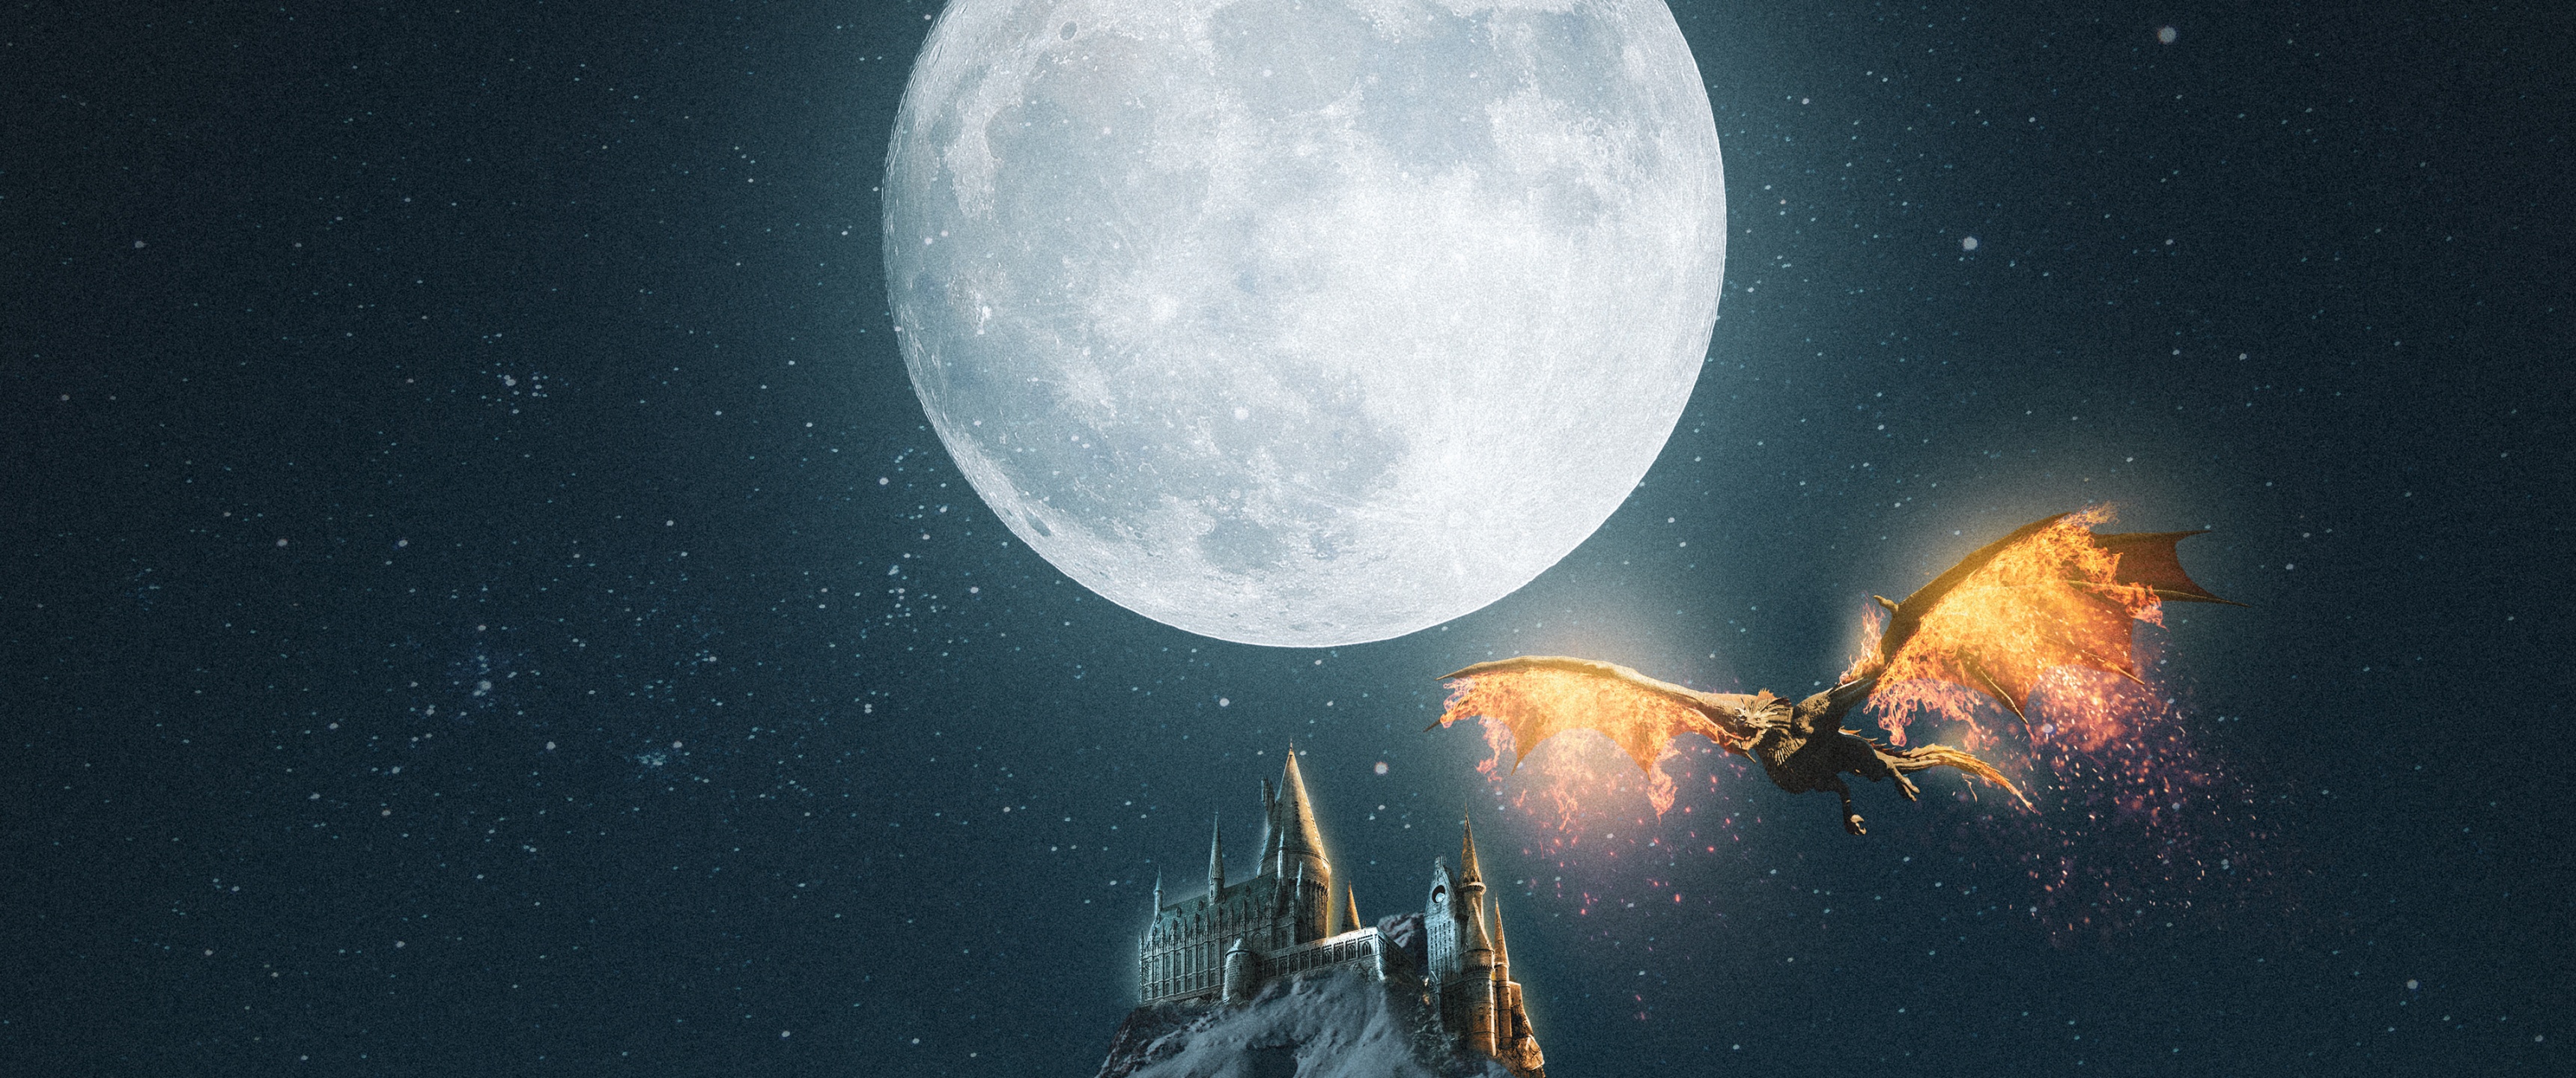 Vampire Castle Night Sky Moon Wallpaper 4K #4.3292